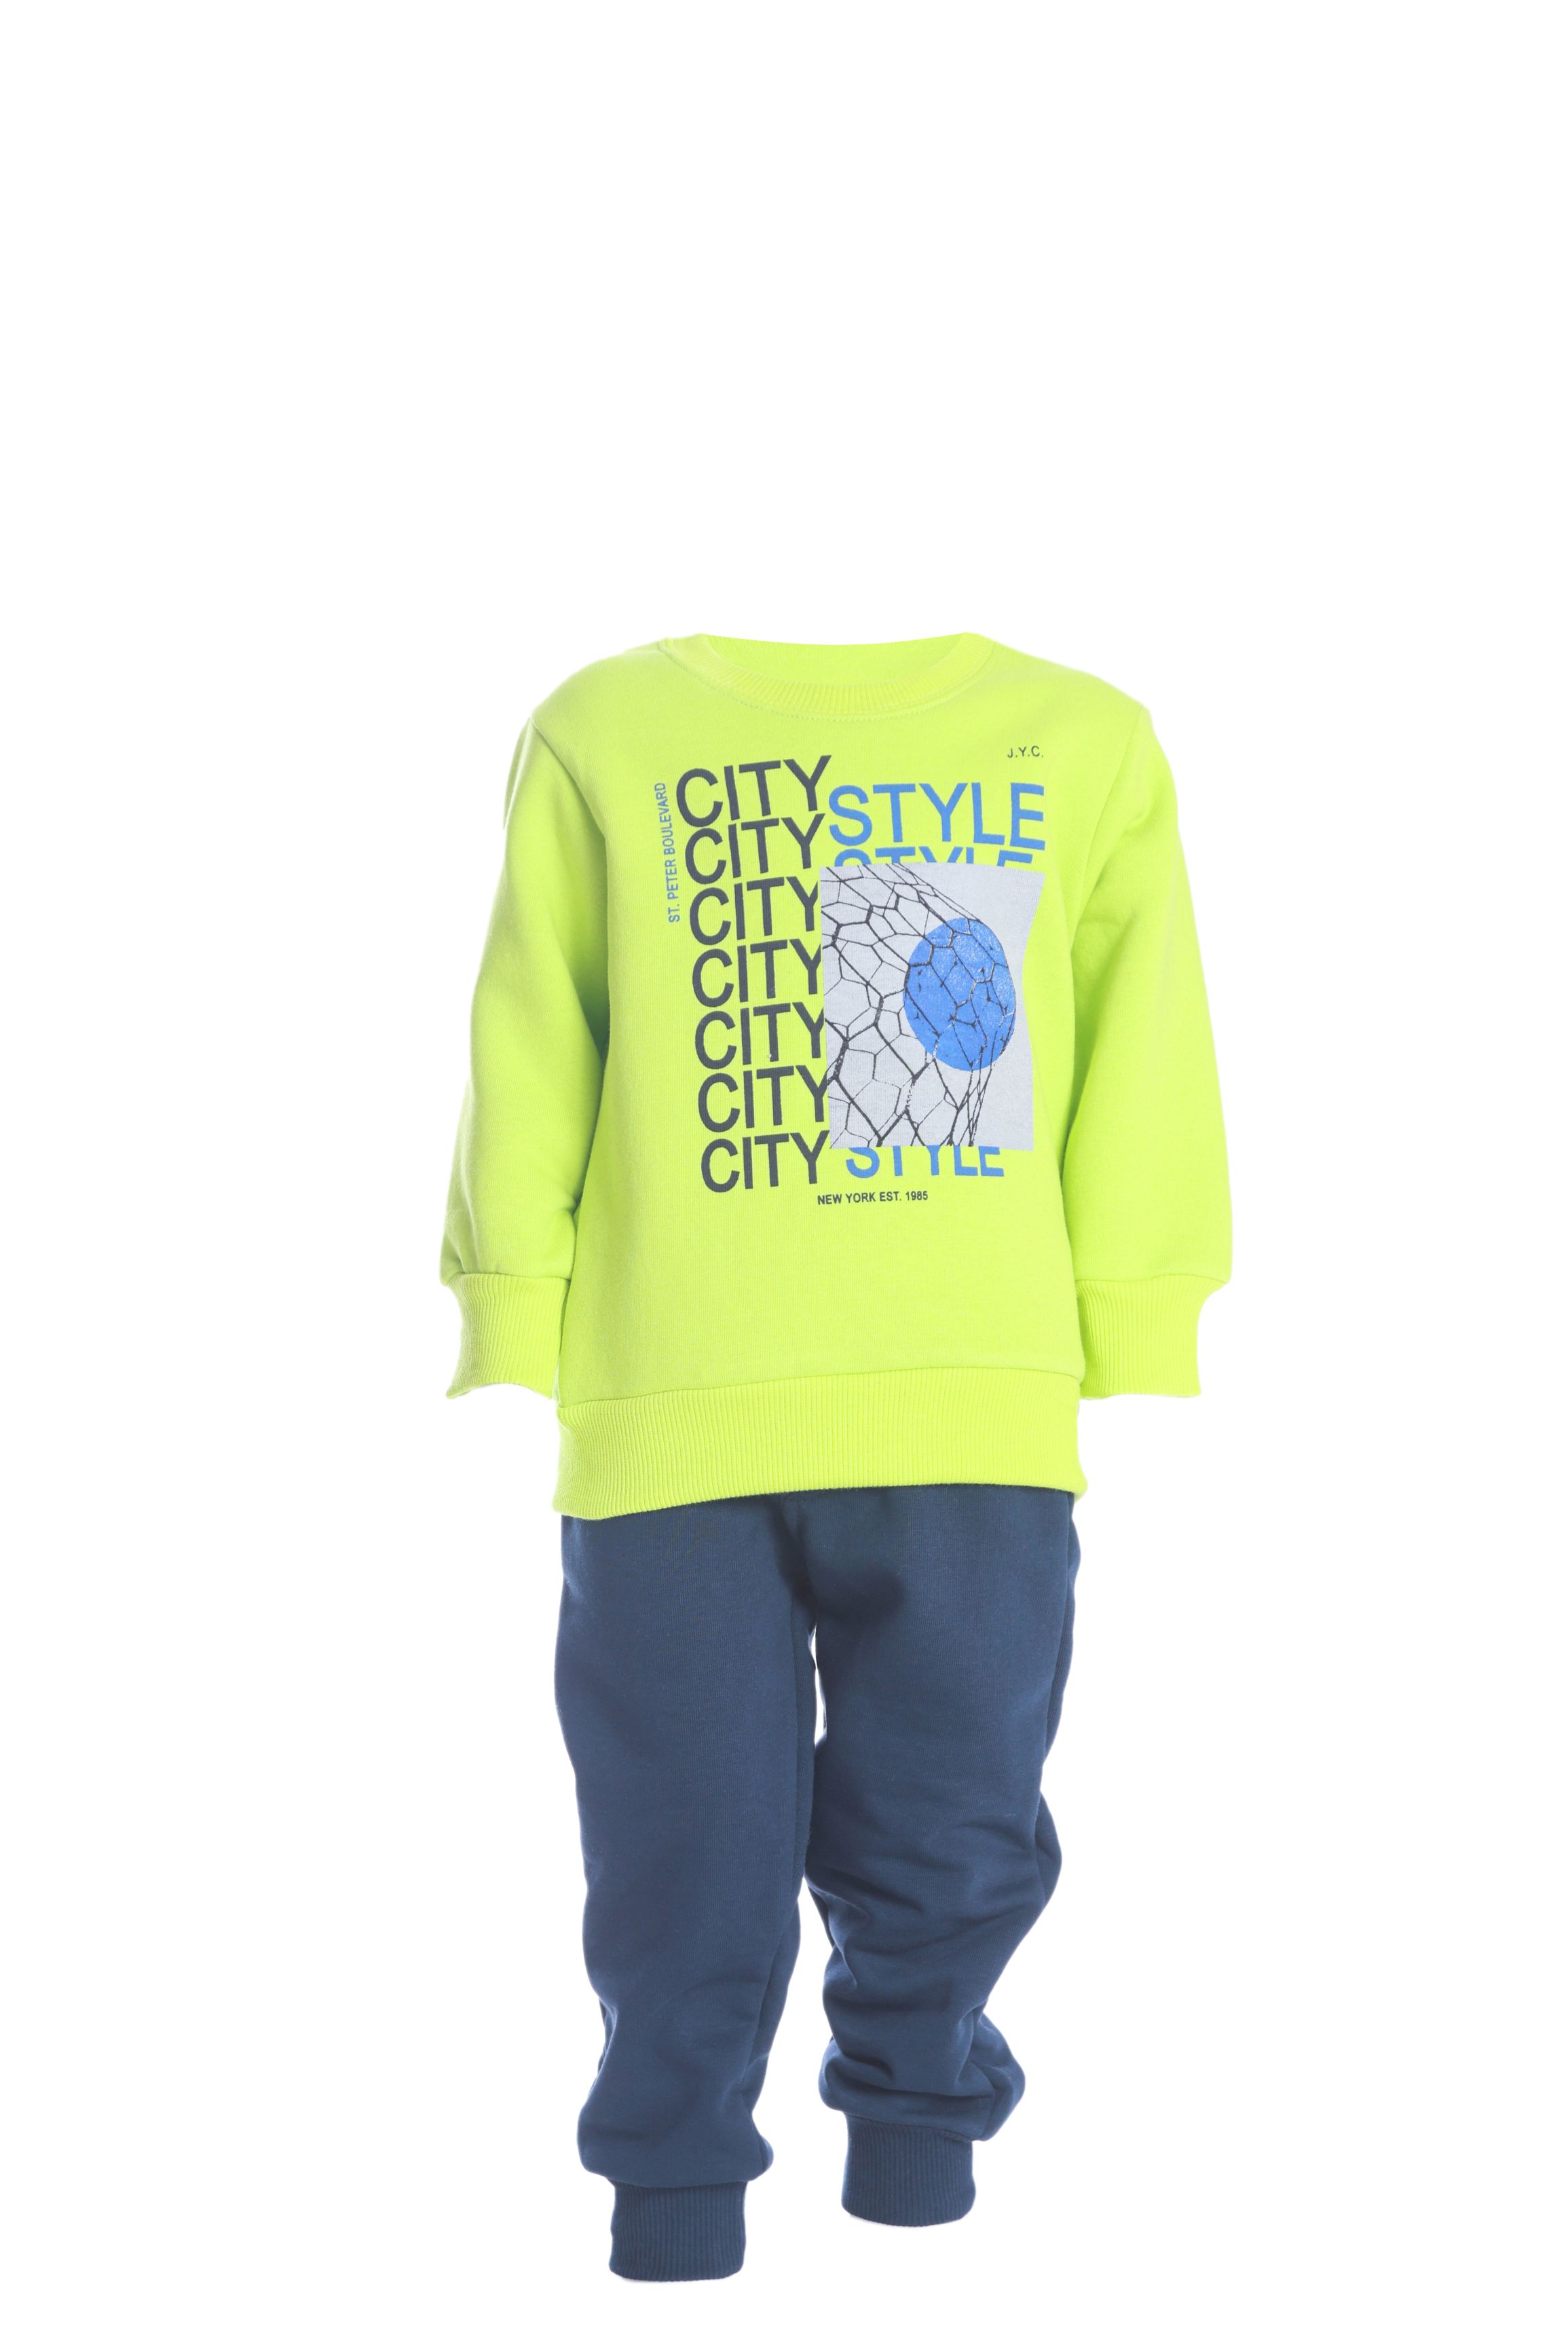 Chlapecká tepláková souprava "CITY STYLE"/Zelená, Neonová Barva: Neonová zelená, Velikost: vel. 1 (78/86 cm)